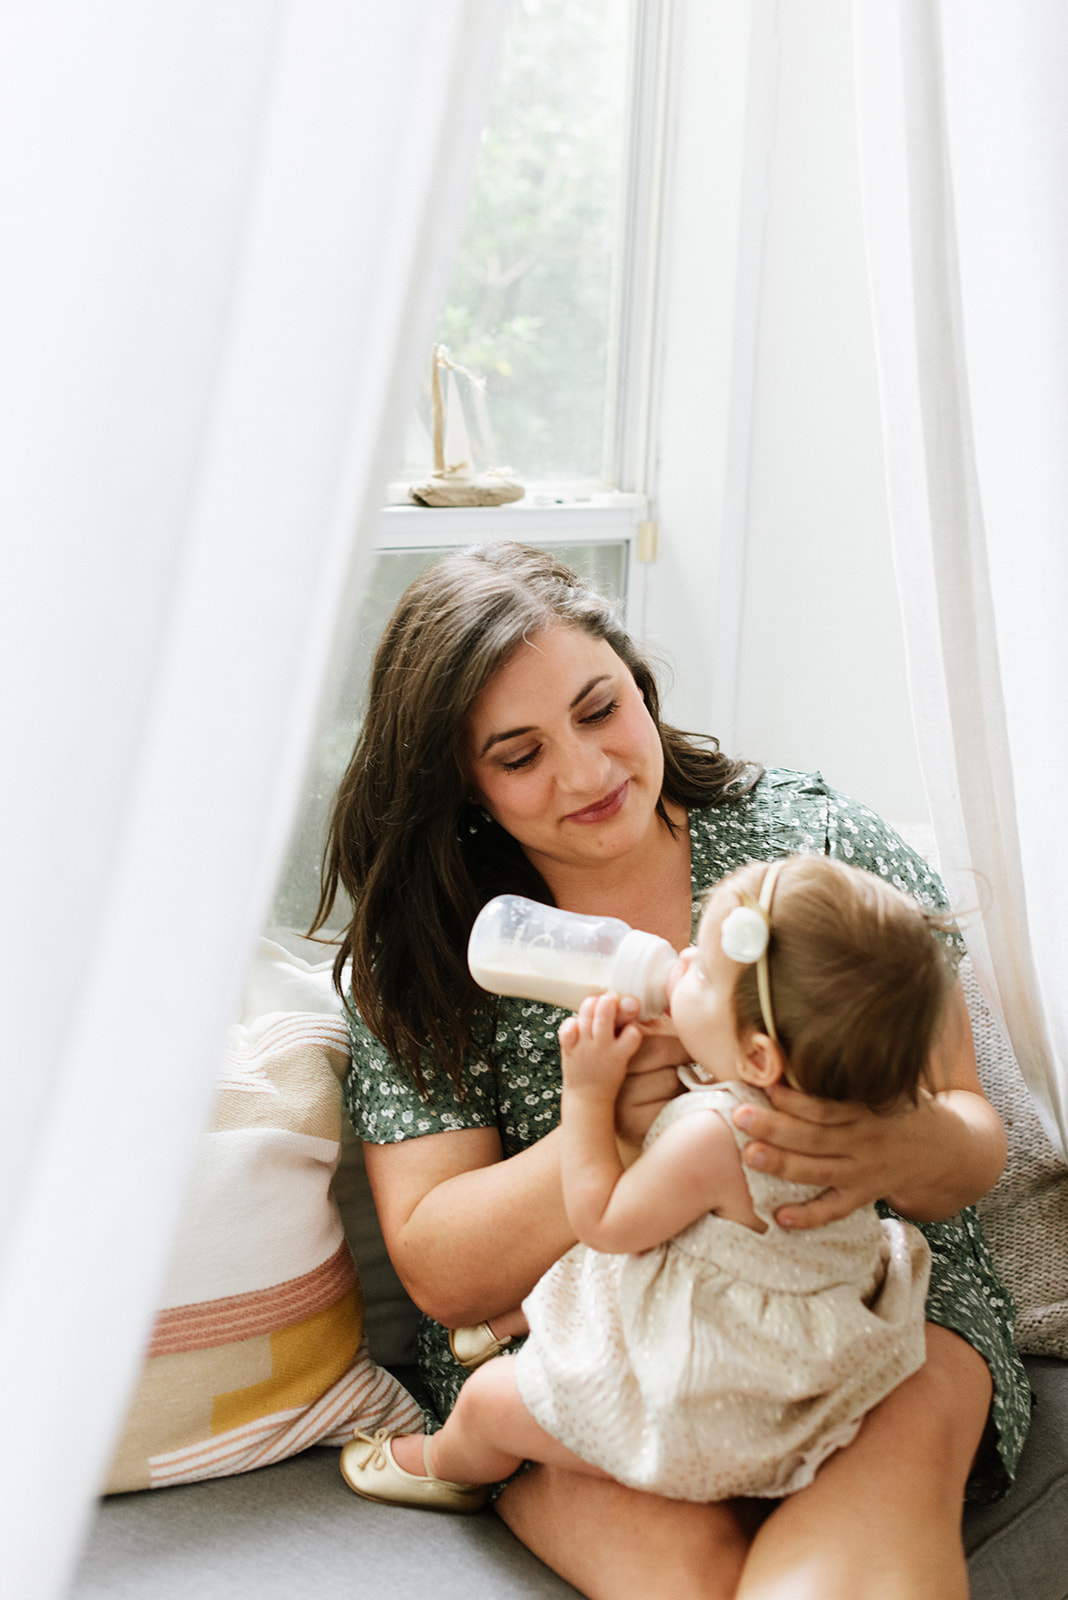 Baby Bottle Feeding Help For Infants